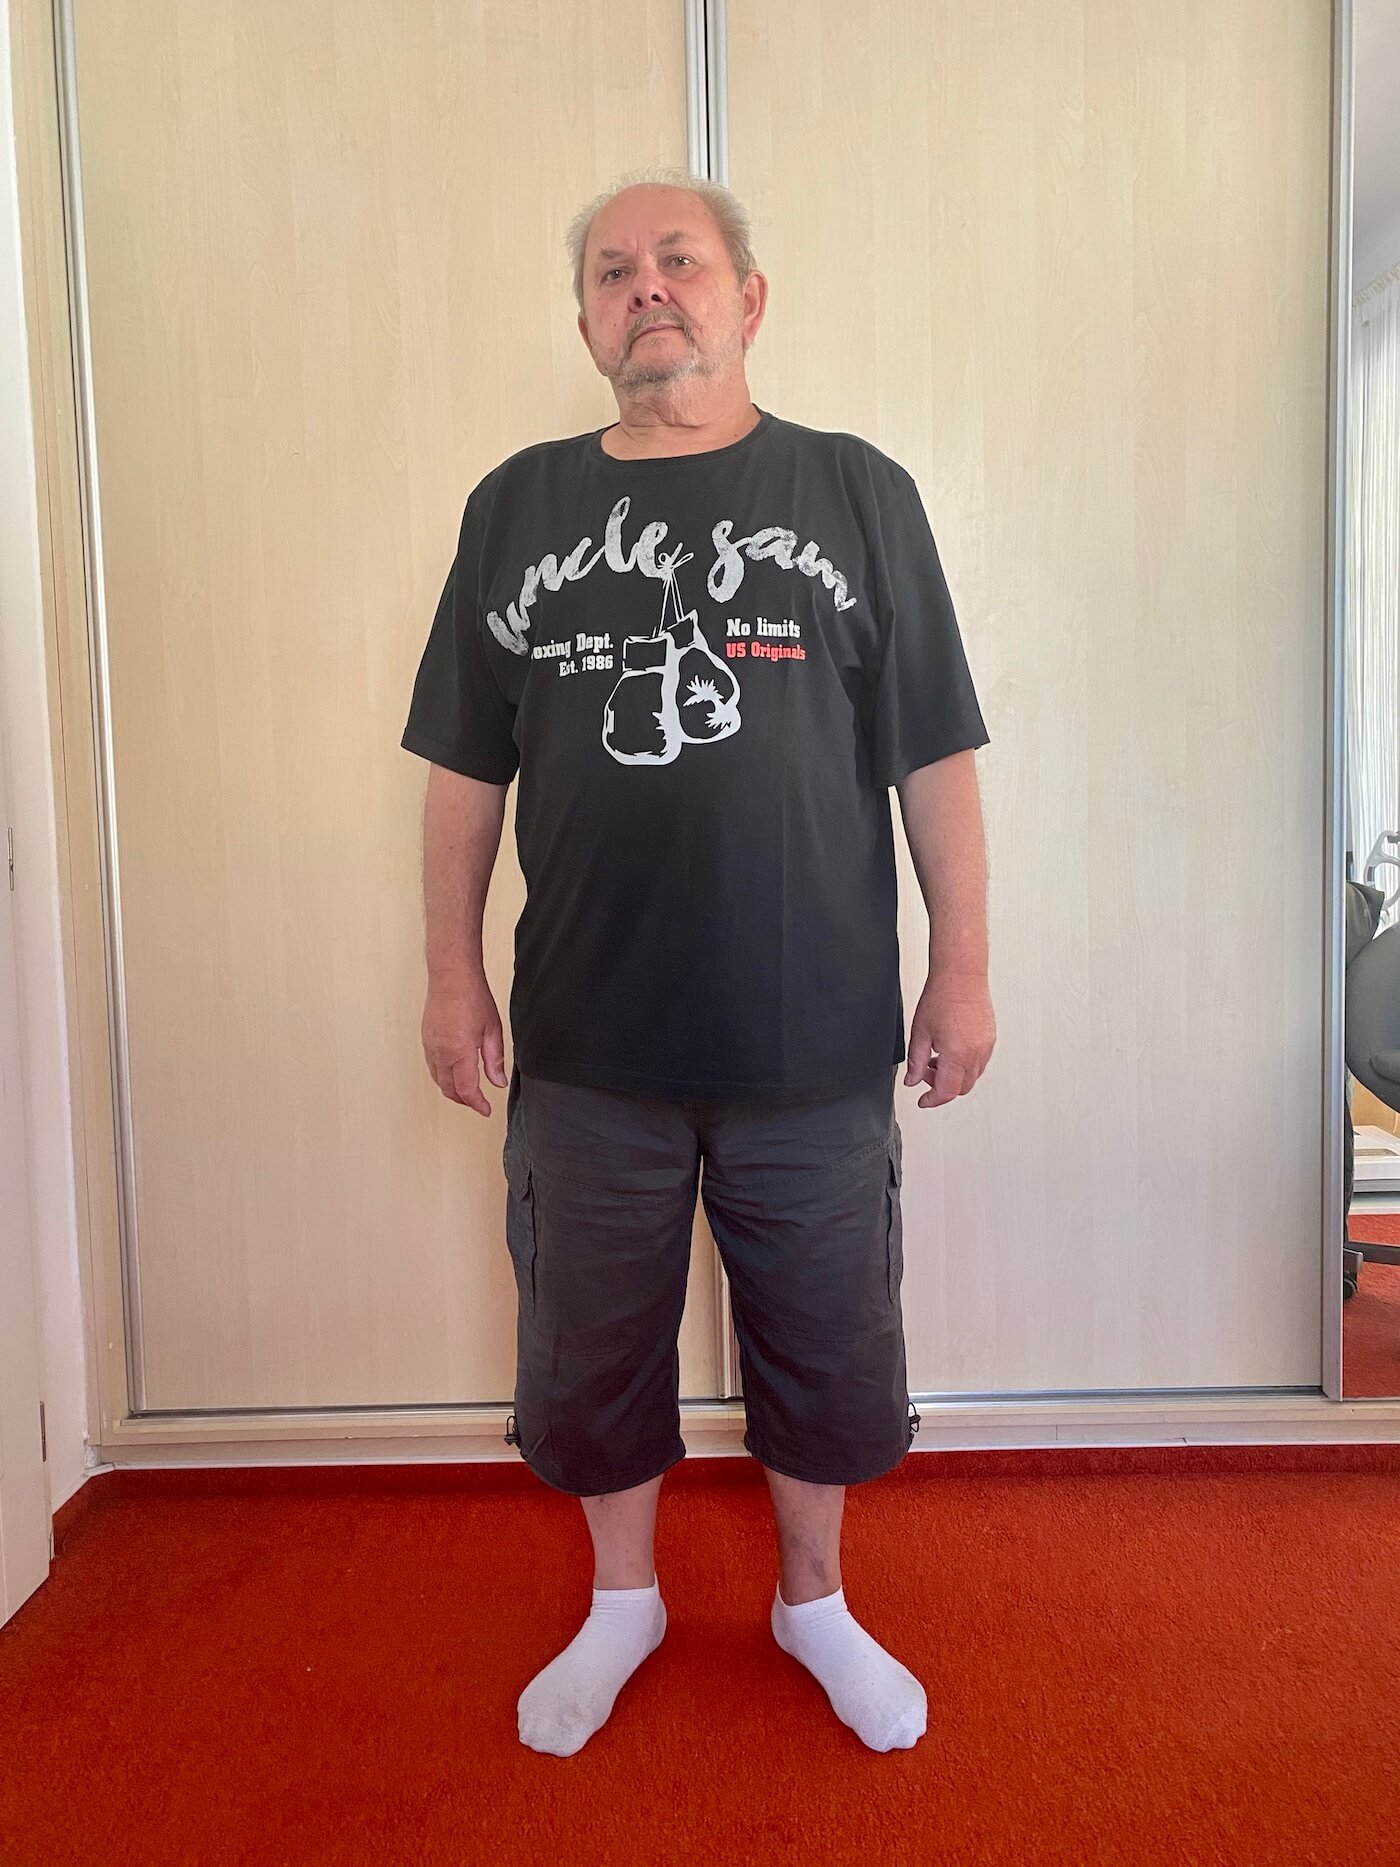 Pan František 65 let po 6 měsících programu zhubl 17 Kg